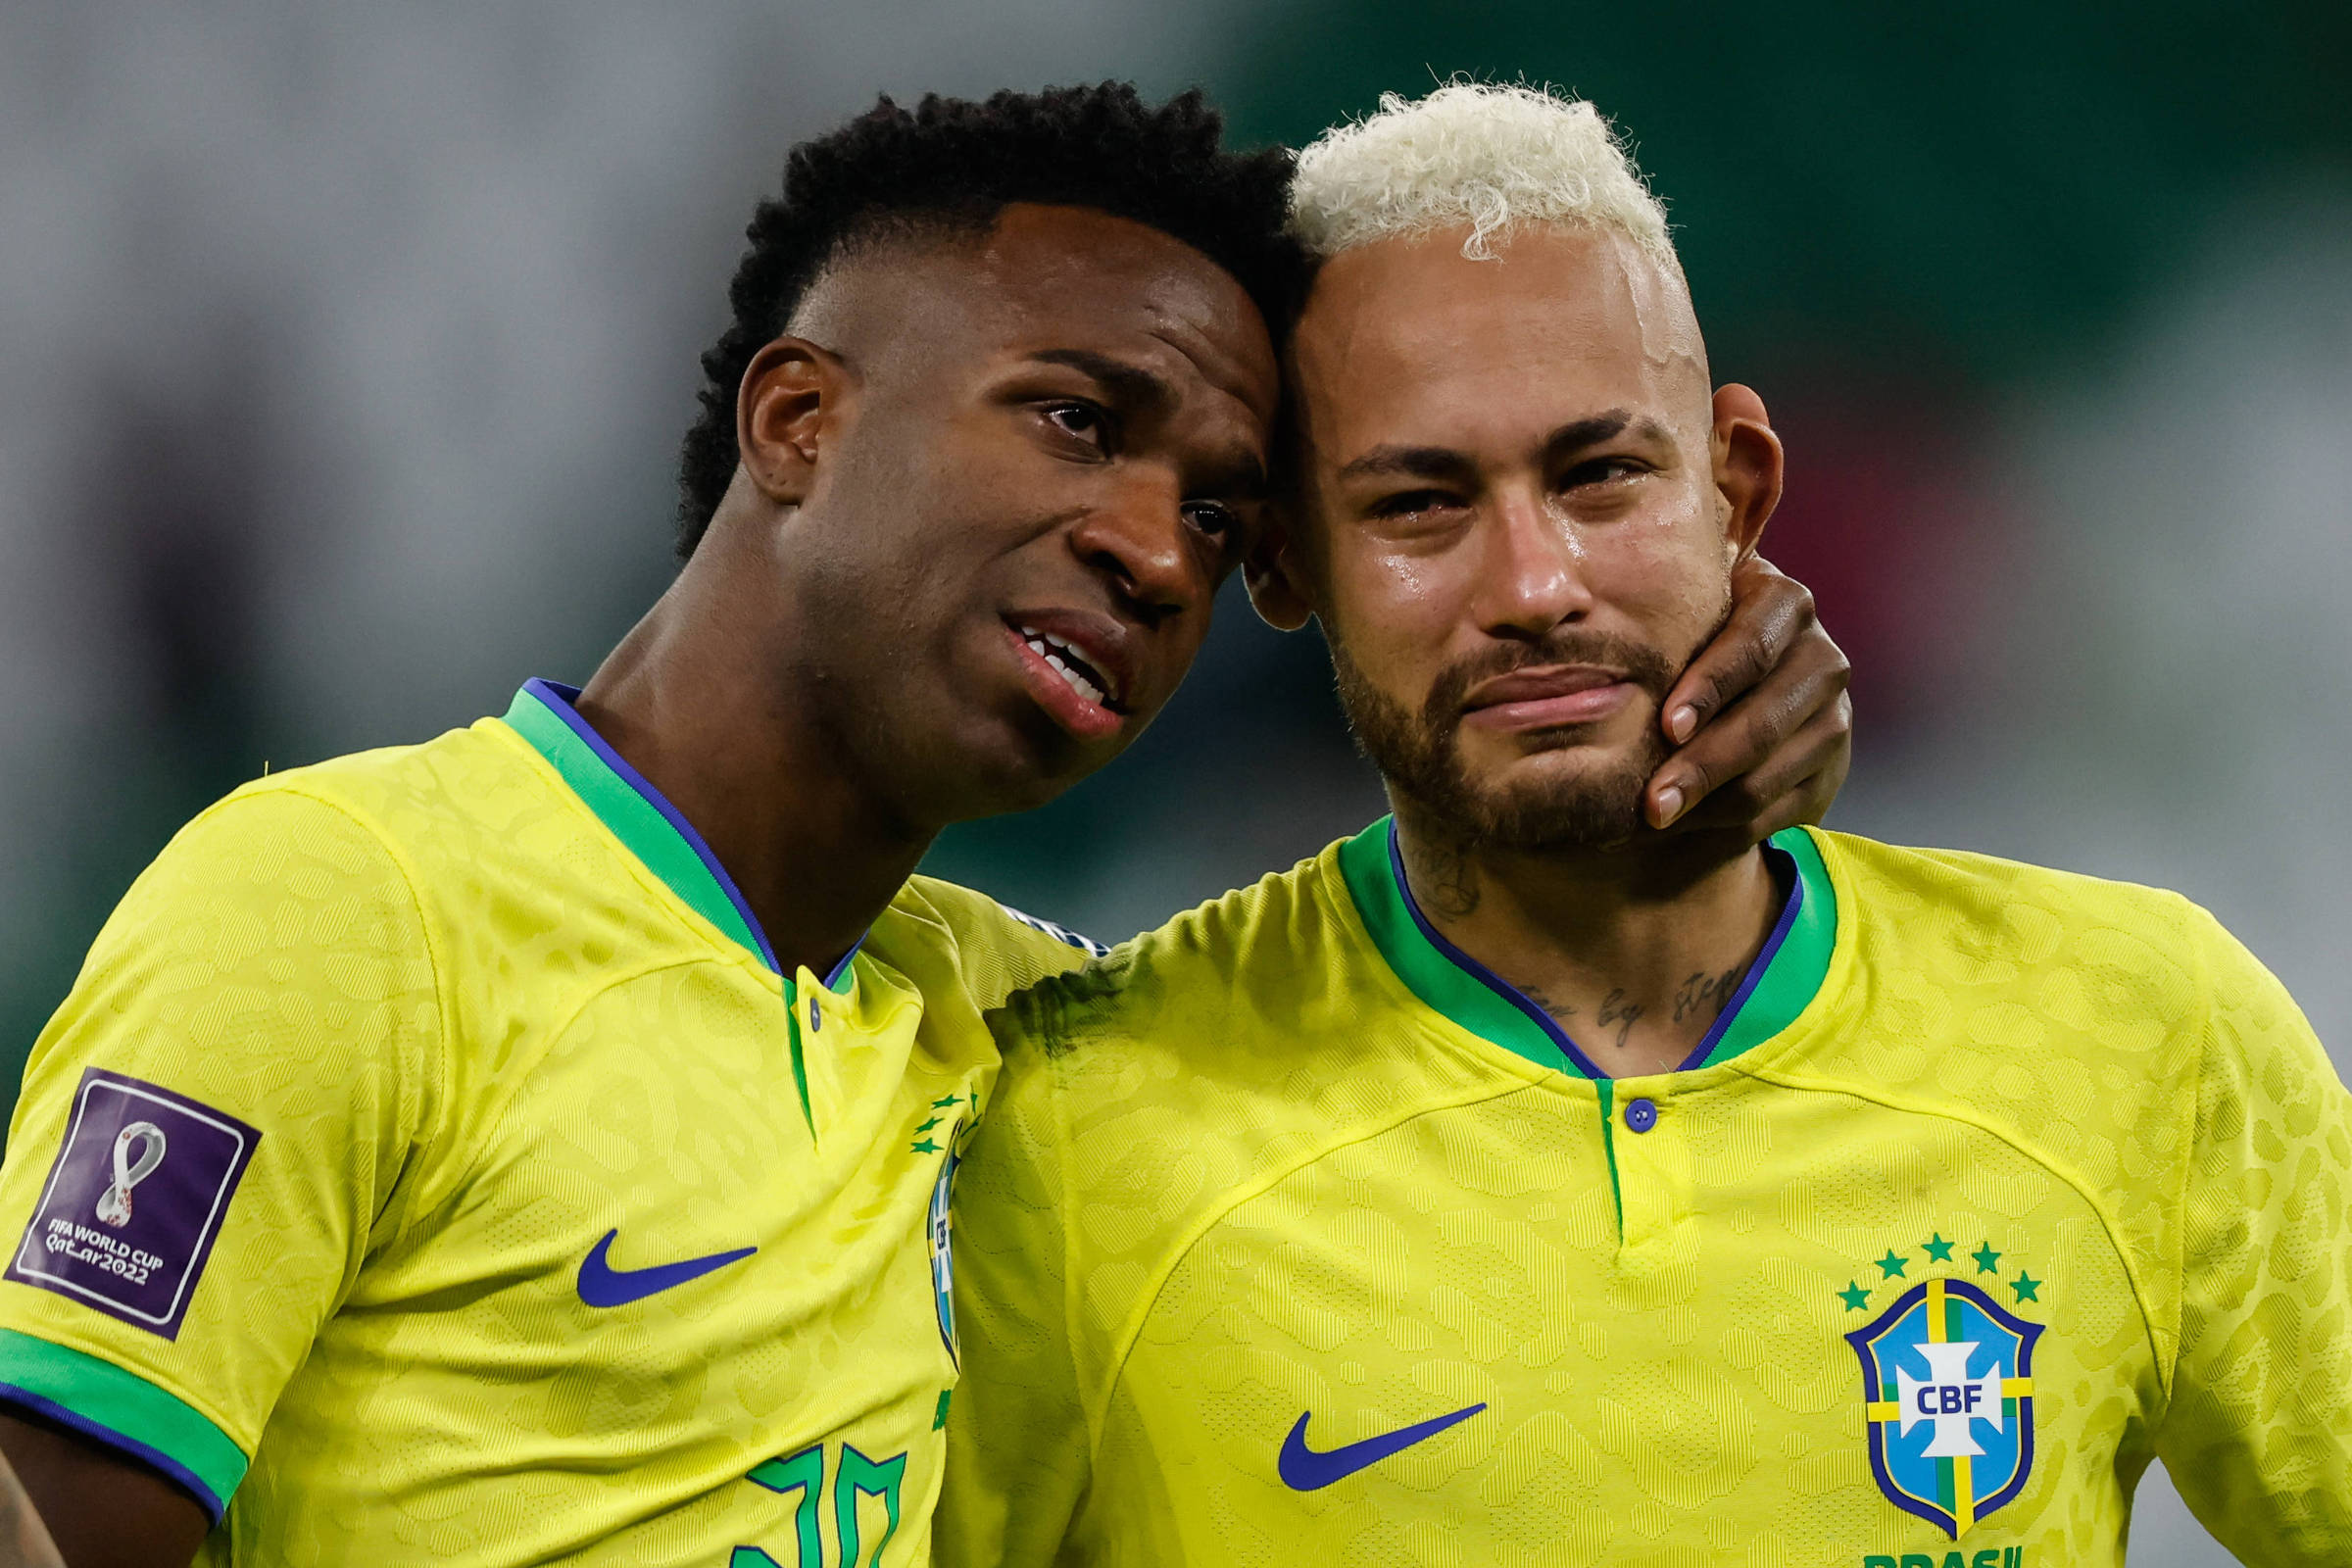 Globo decide transmitir apenas a metade dos jogos da Copa de 2026